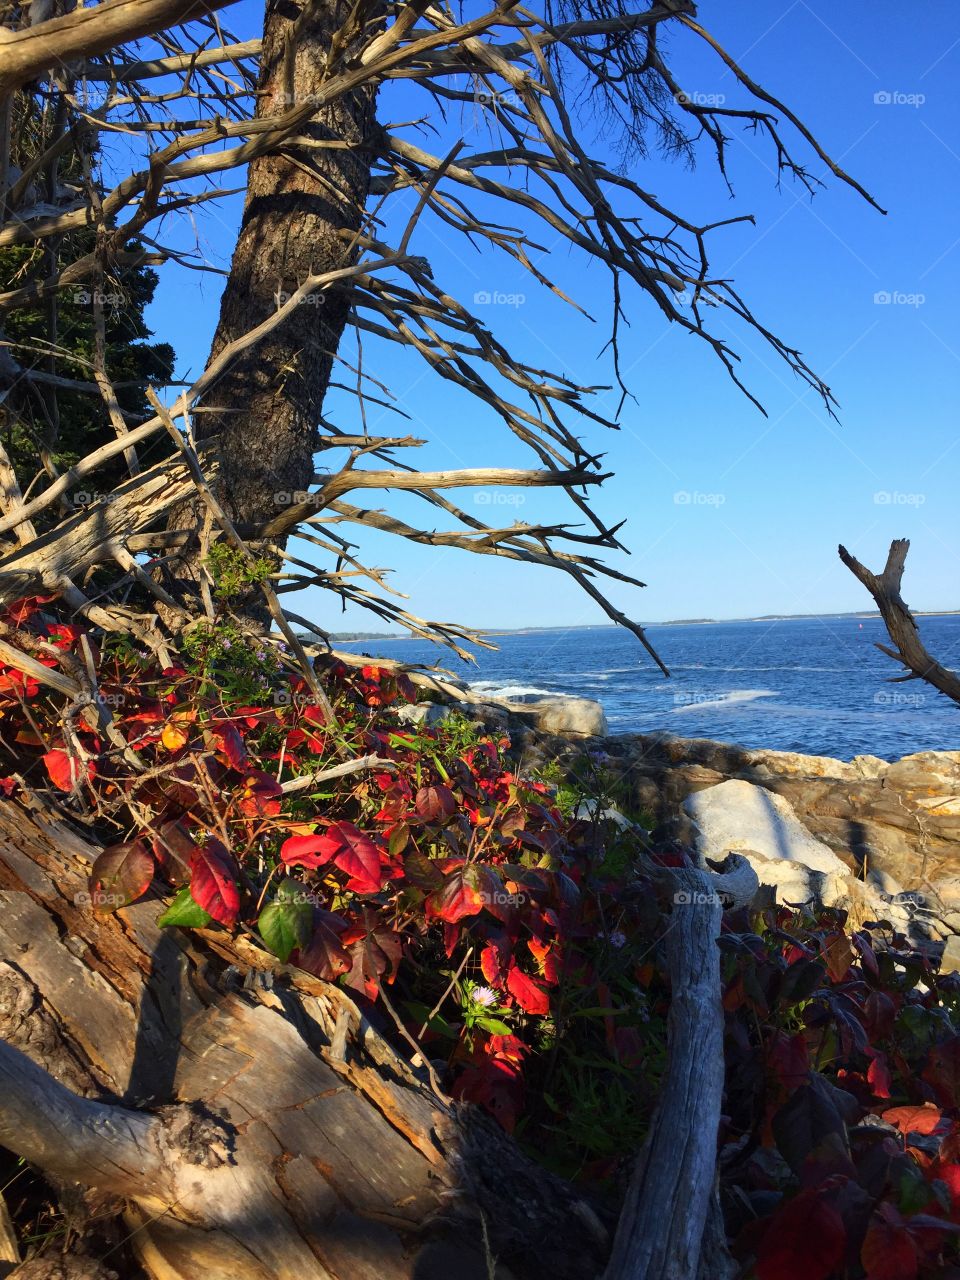 Seaside autumn ivy
